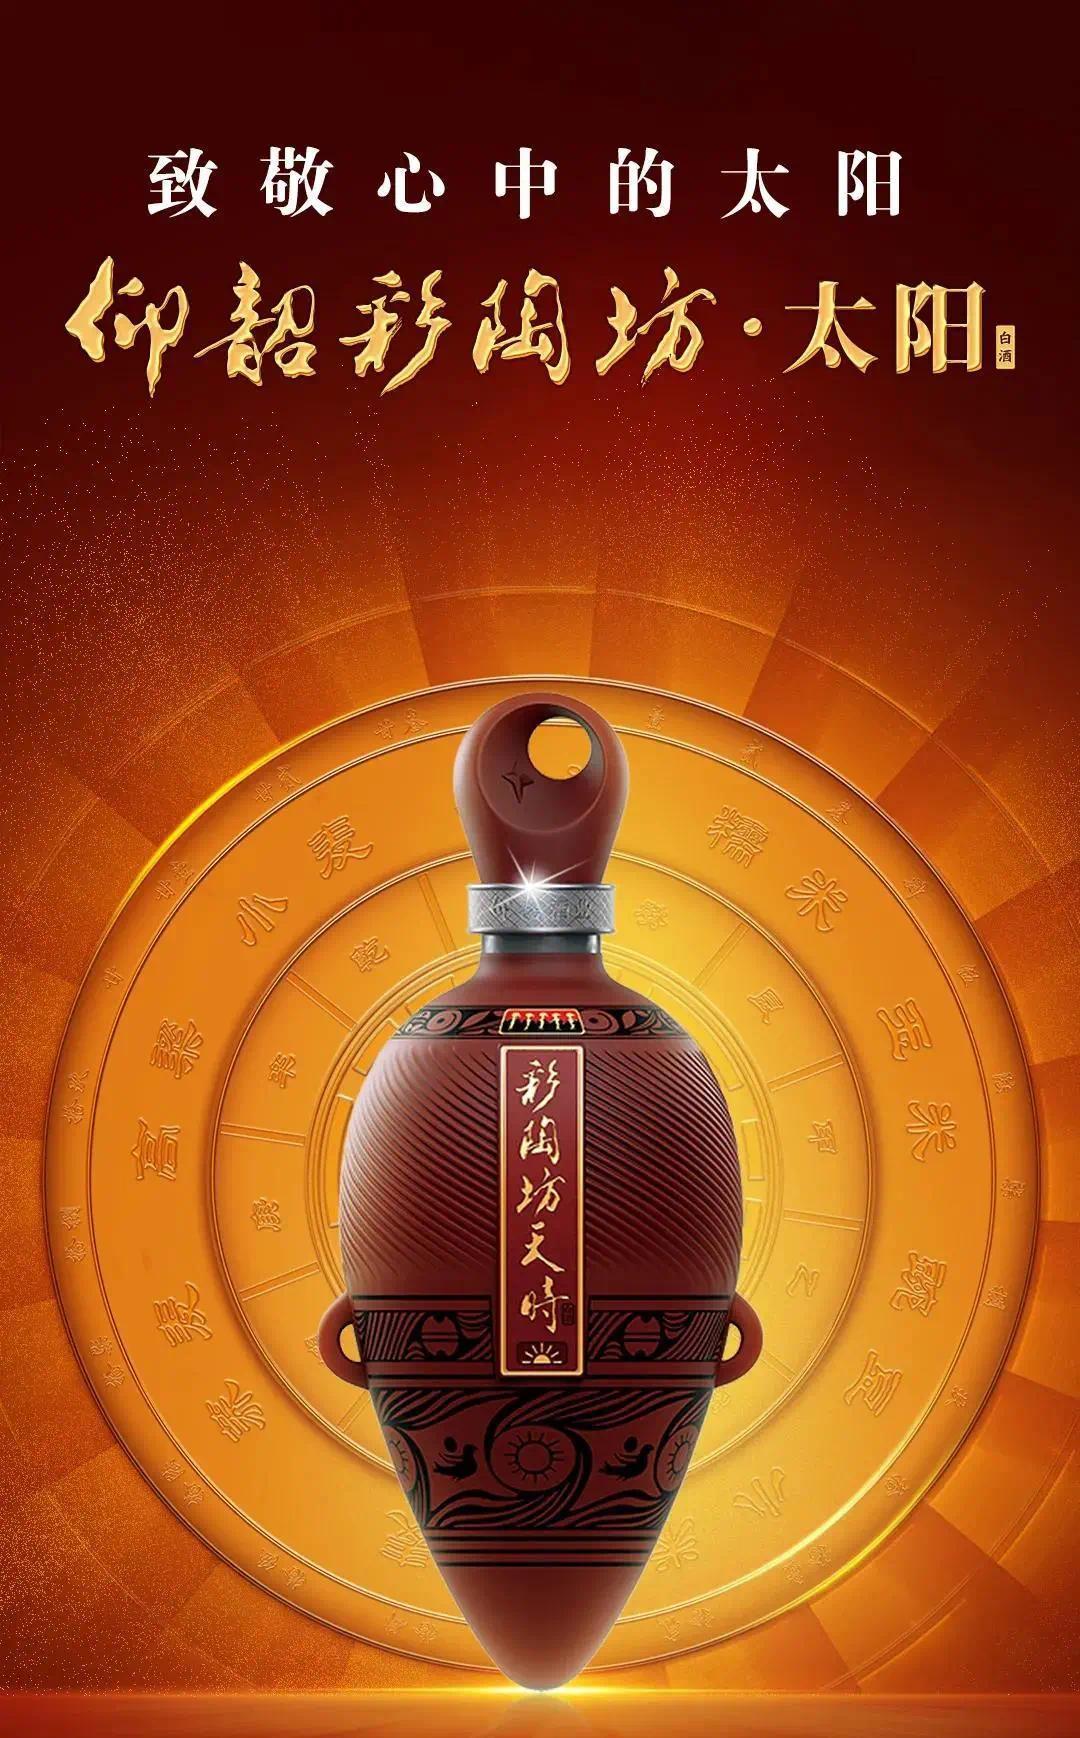 9月3日,由仰韶酒庄仙门山提报的仰韶彩陶坊天时系列日月星产品,在中国